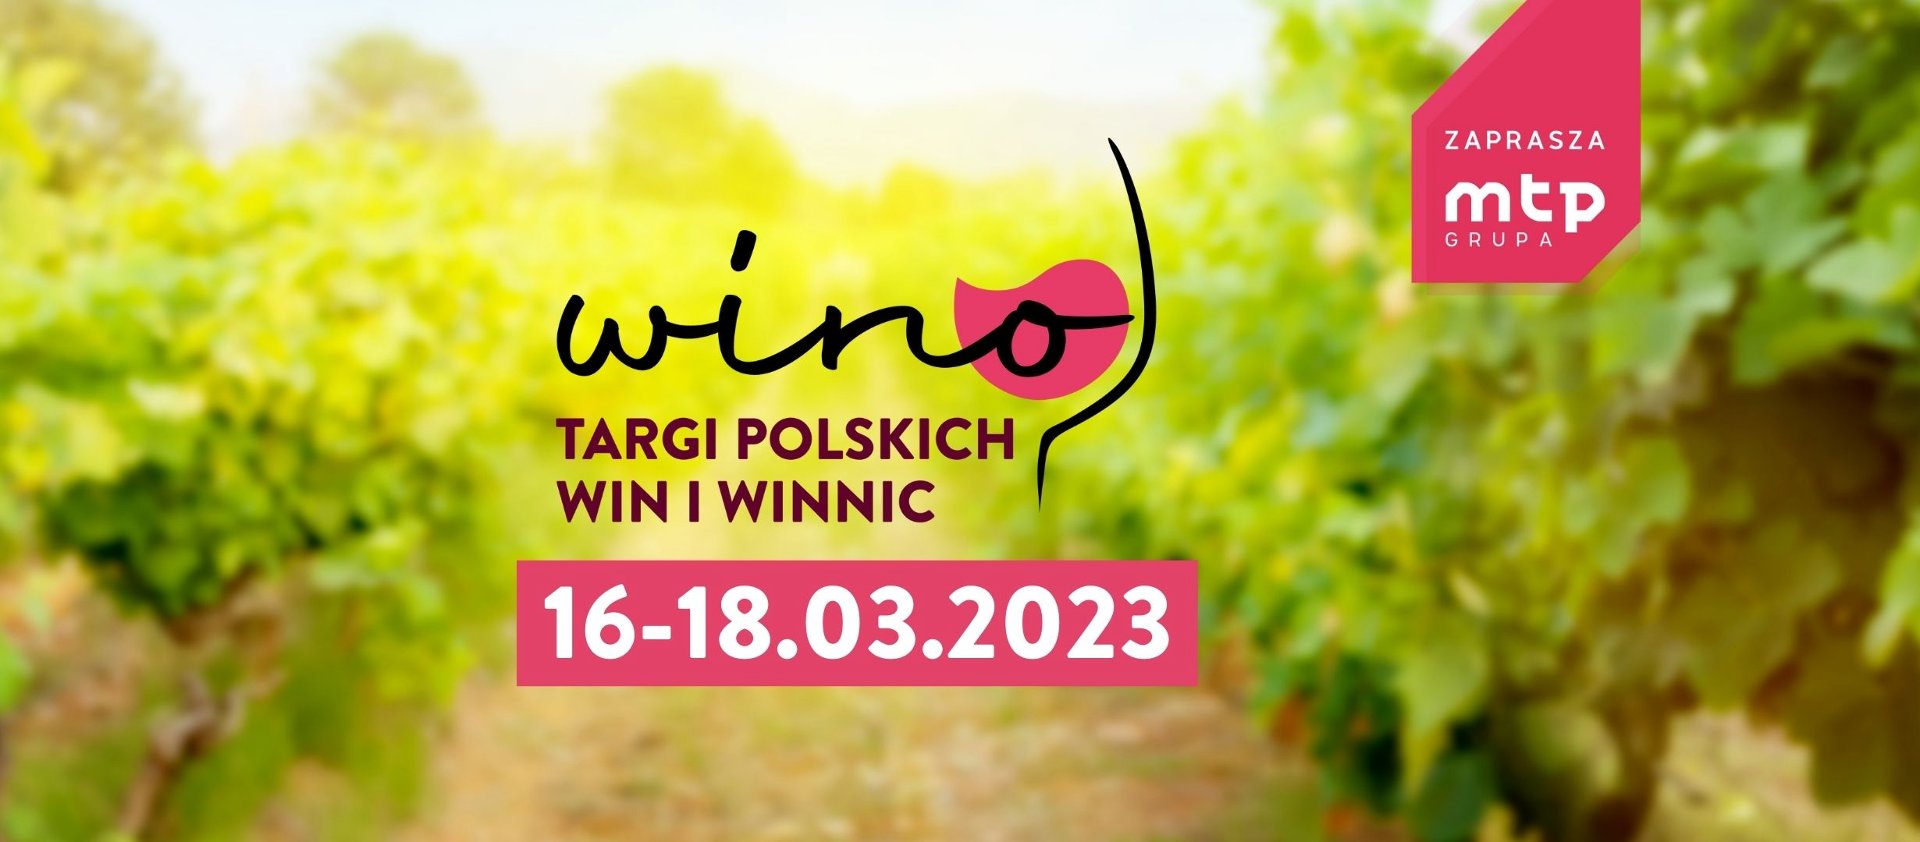 Zdjęcie przedstawia grafikę z napisem "Wino - Targi Polskich Win i Winnic", datą wydarzenia oraz logo Grupy MTP. - grafika artykułu